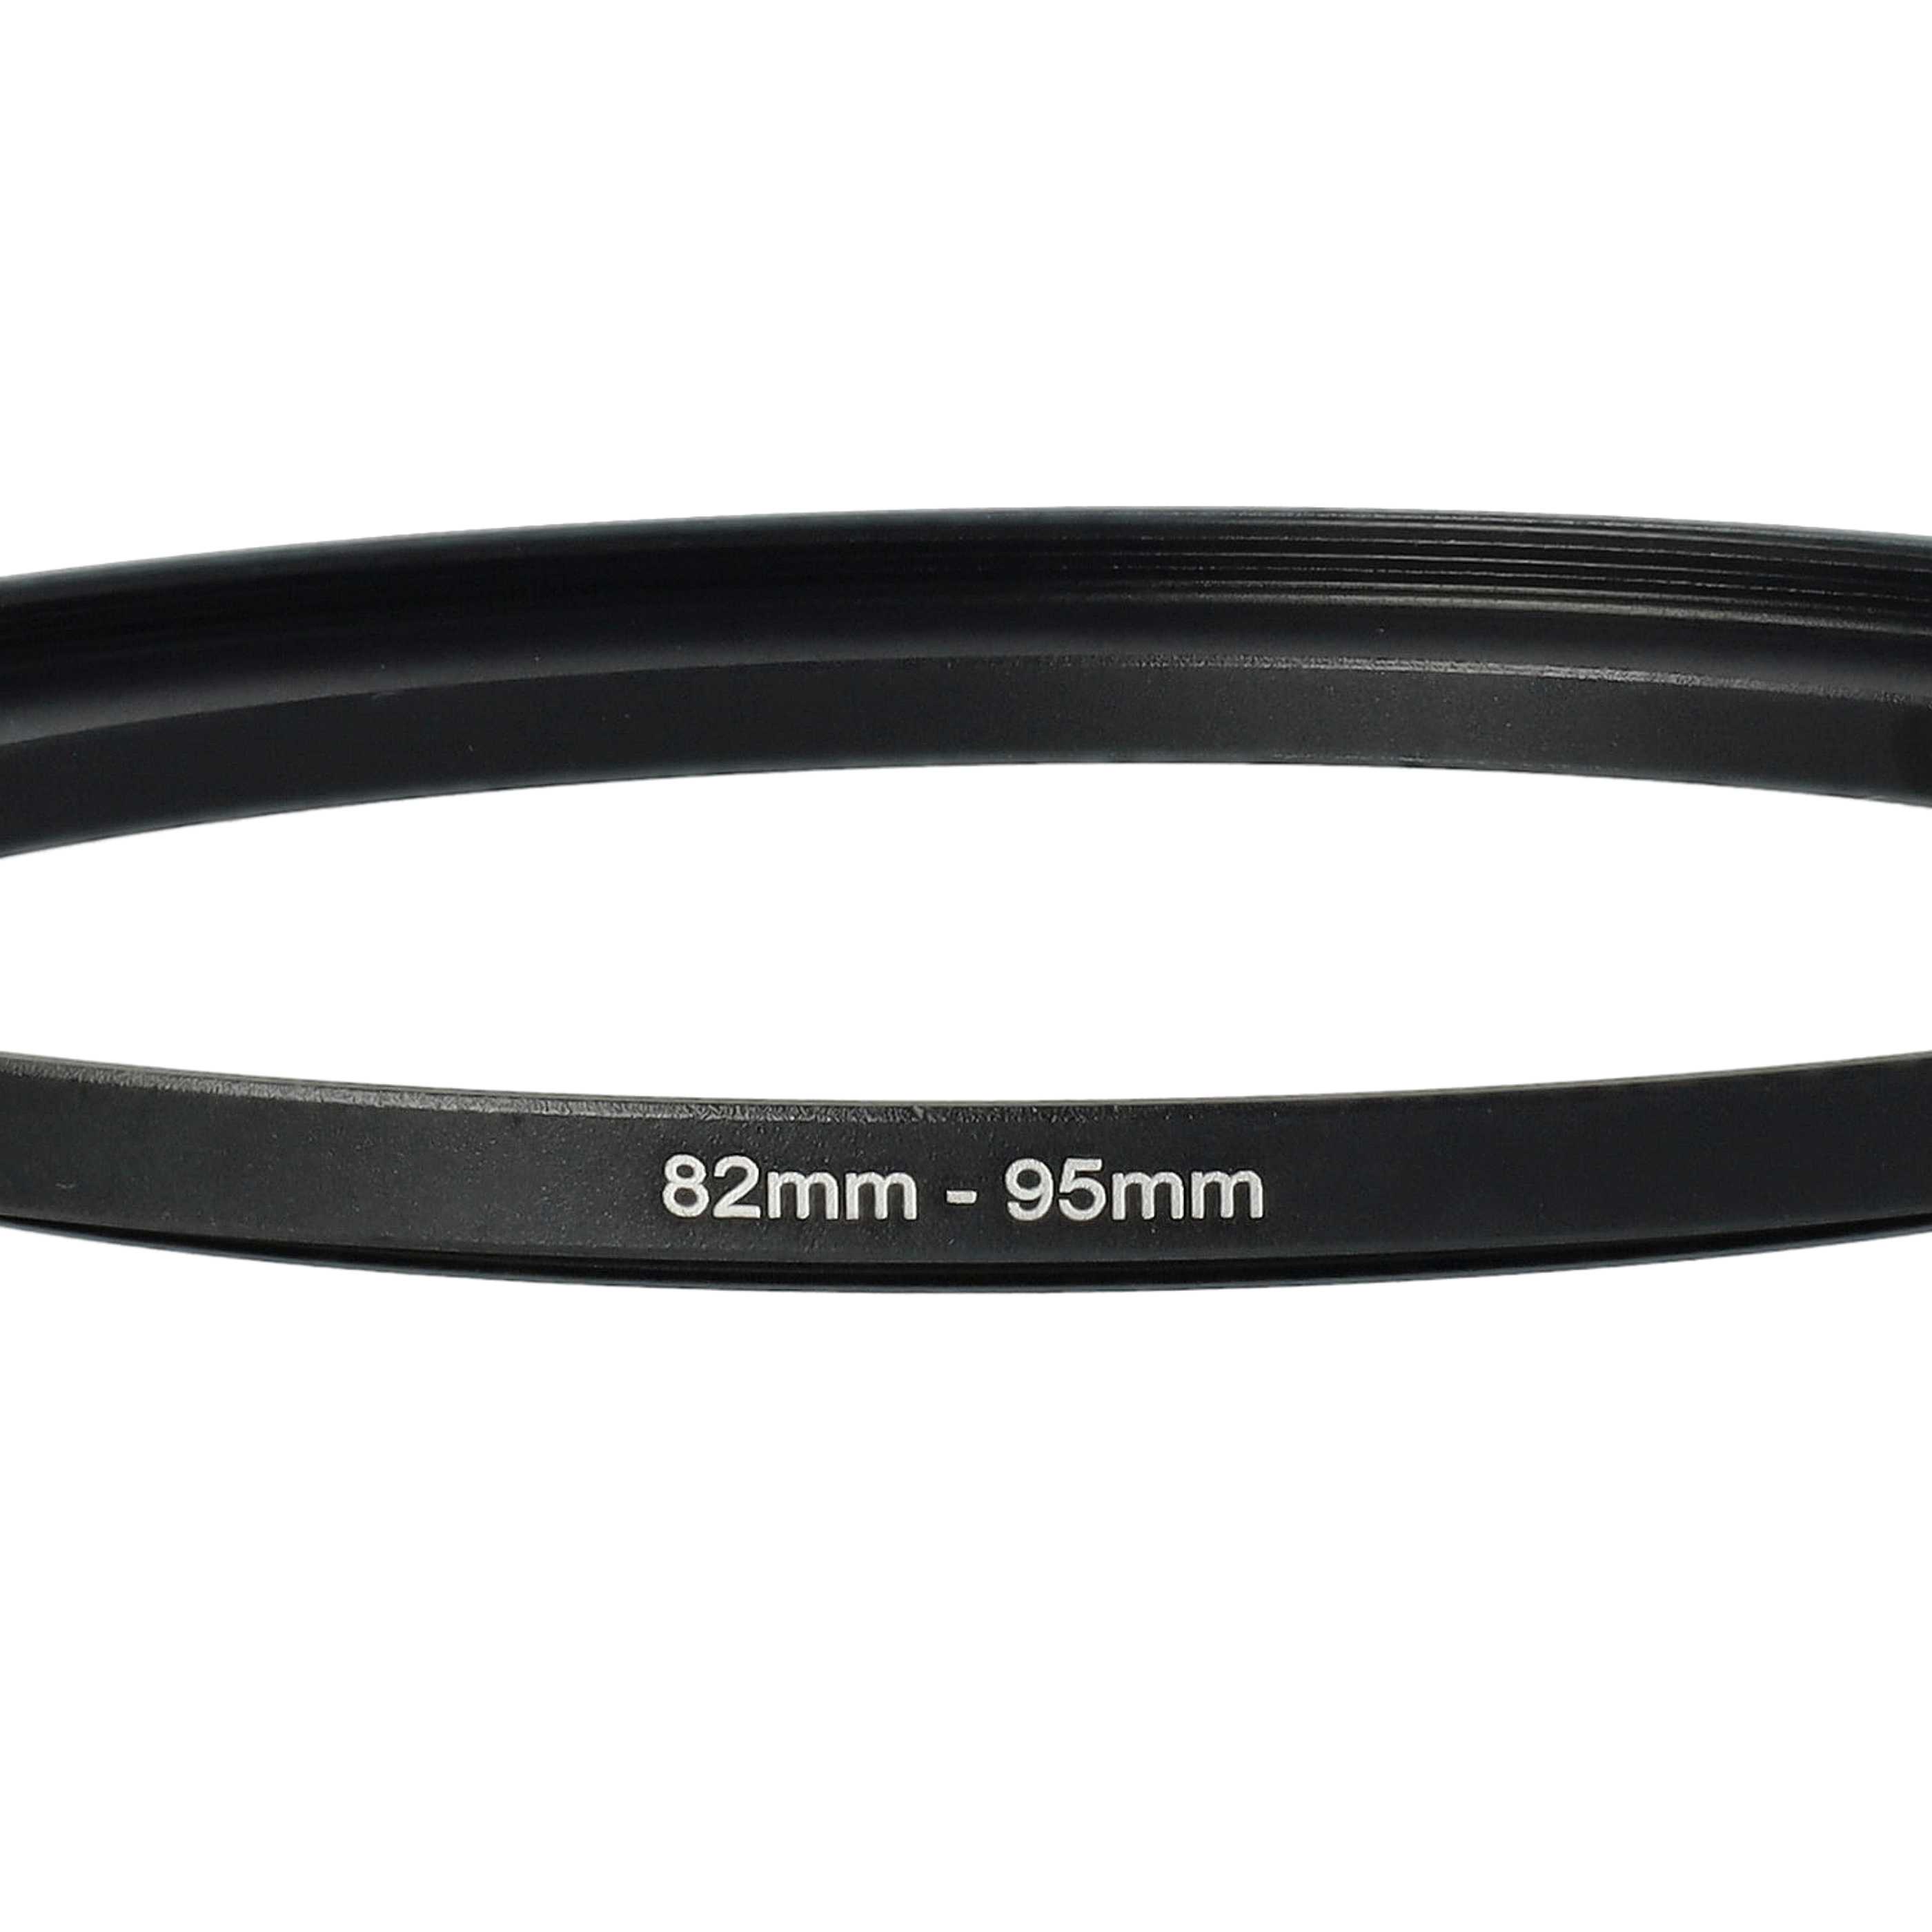 Step-Up-Ring Adapter 82 mm auf 95 mm passend für diverse Kamera-Objektive - Filteradapter